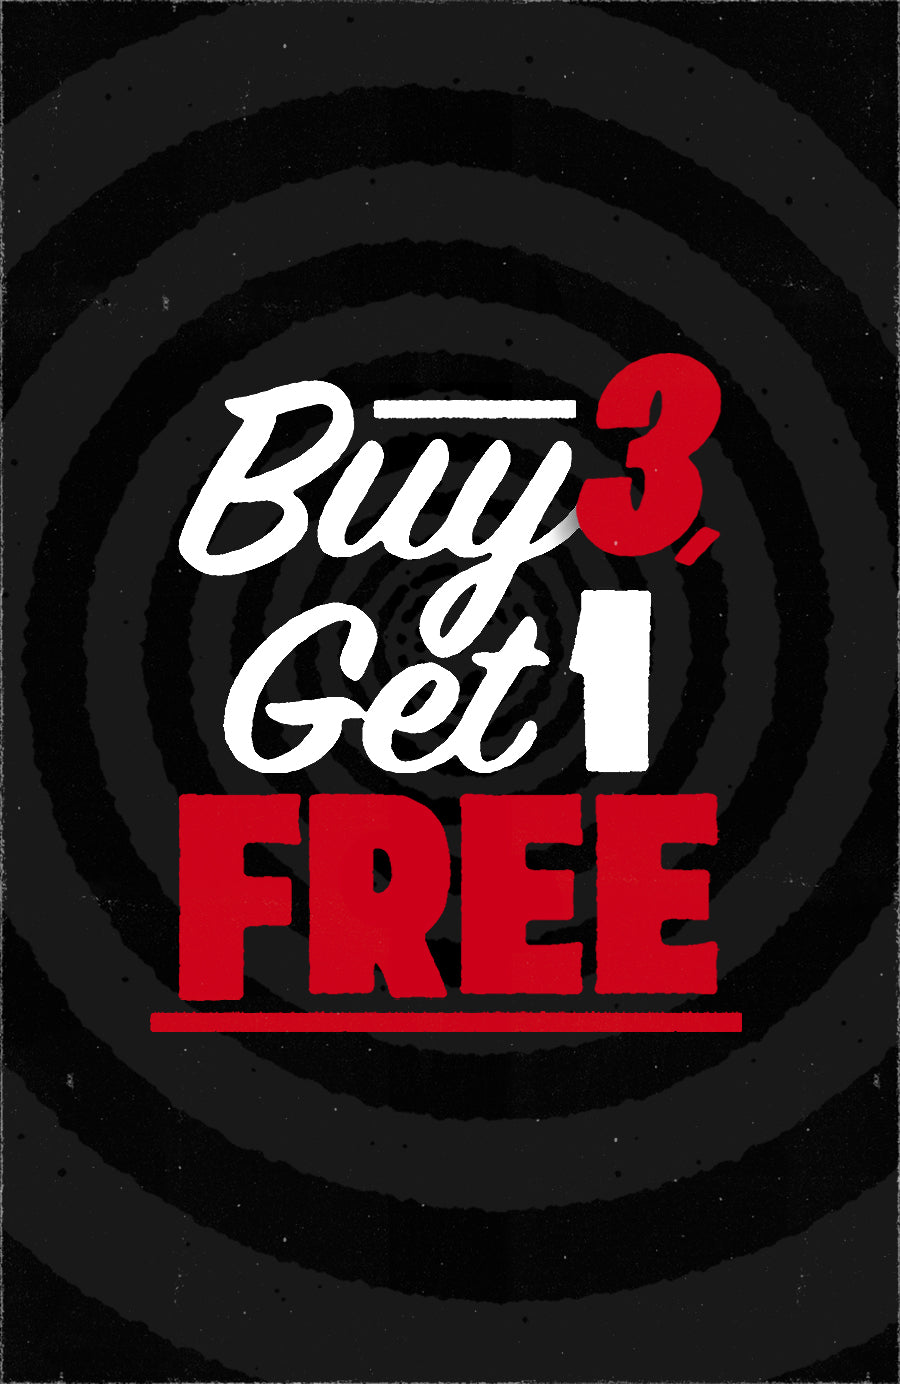 Buy 3, Get 1 Free - Revenge Of